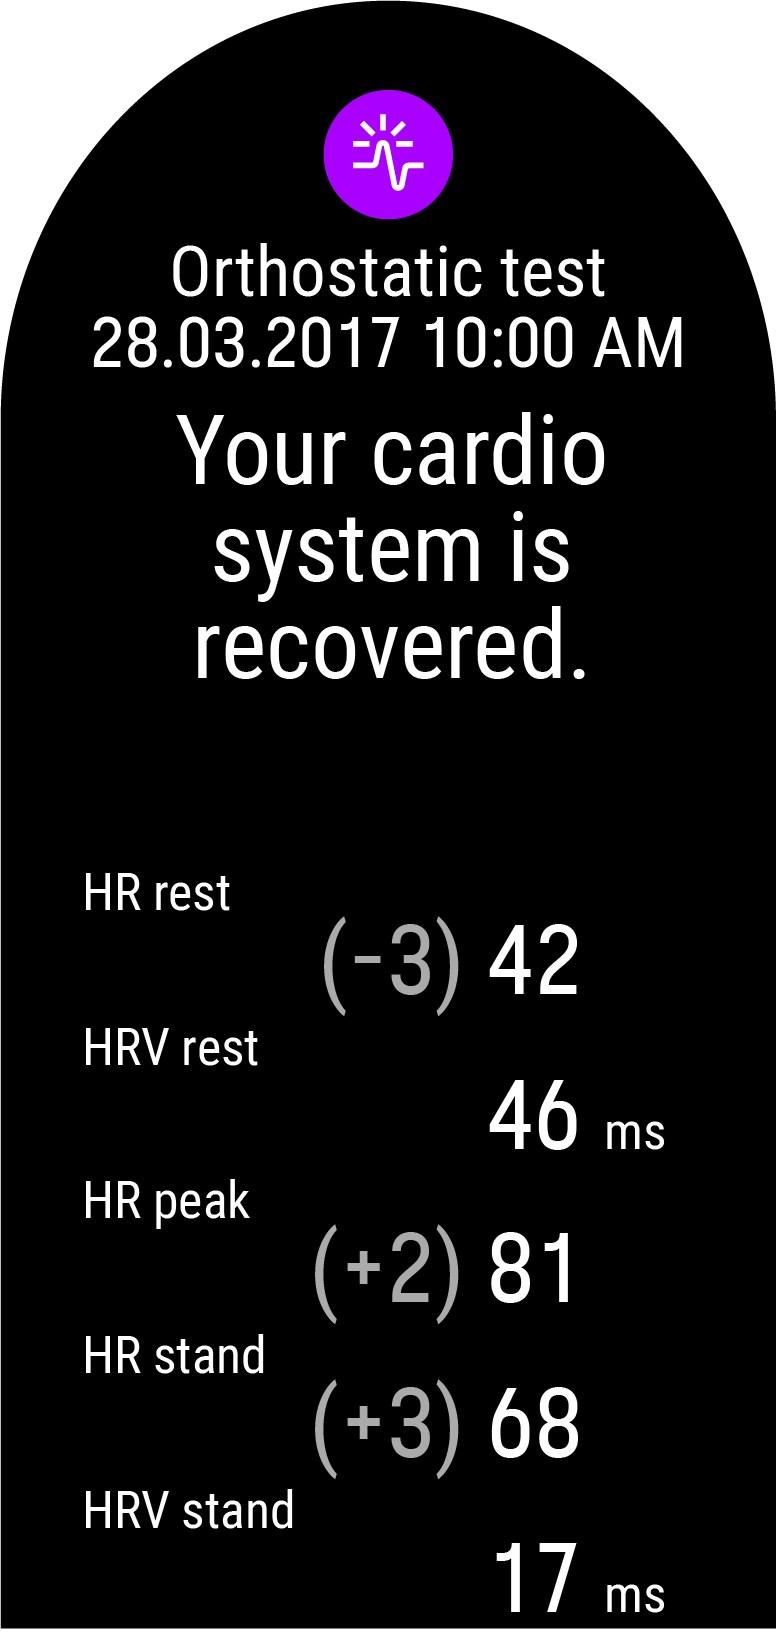 Wähle auf deiner Uhr Orthostatischer Test > Test mit HF-Sensor starten. Die Uhr beginnt, nach deiner Herzfrequenz zu suchen.